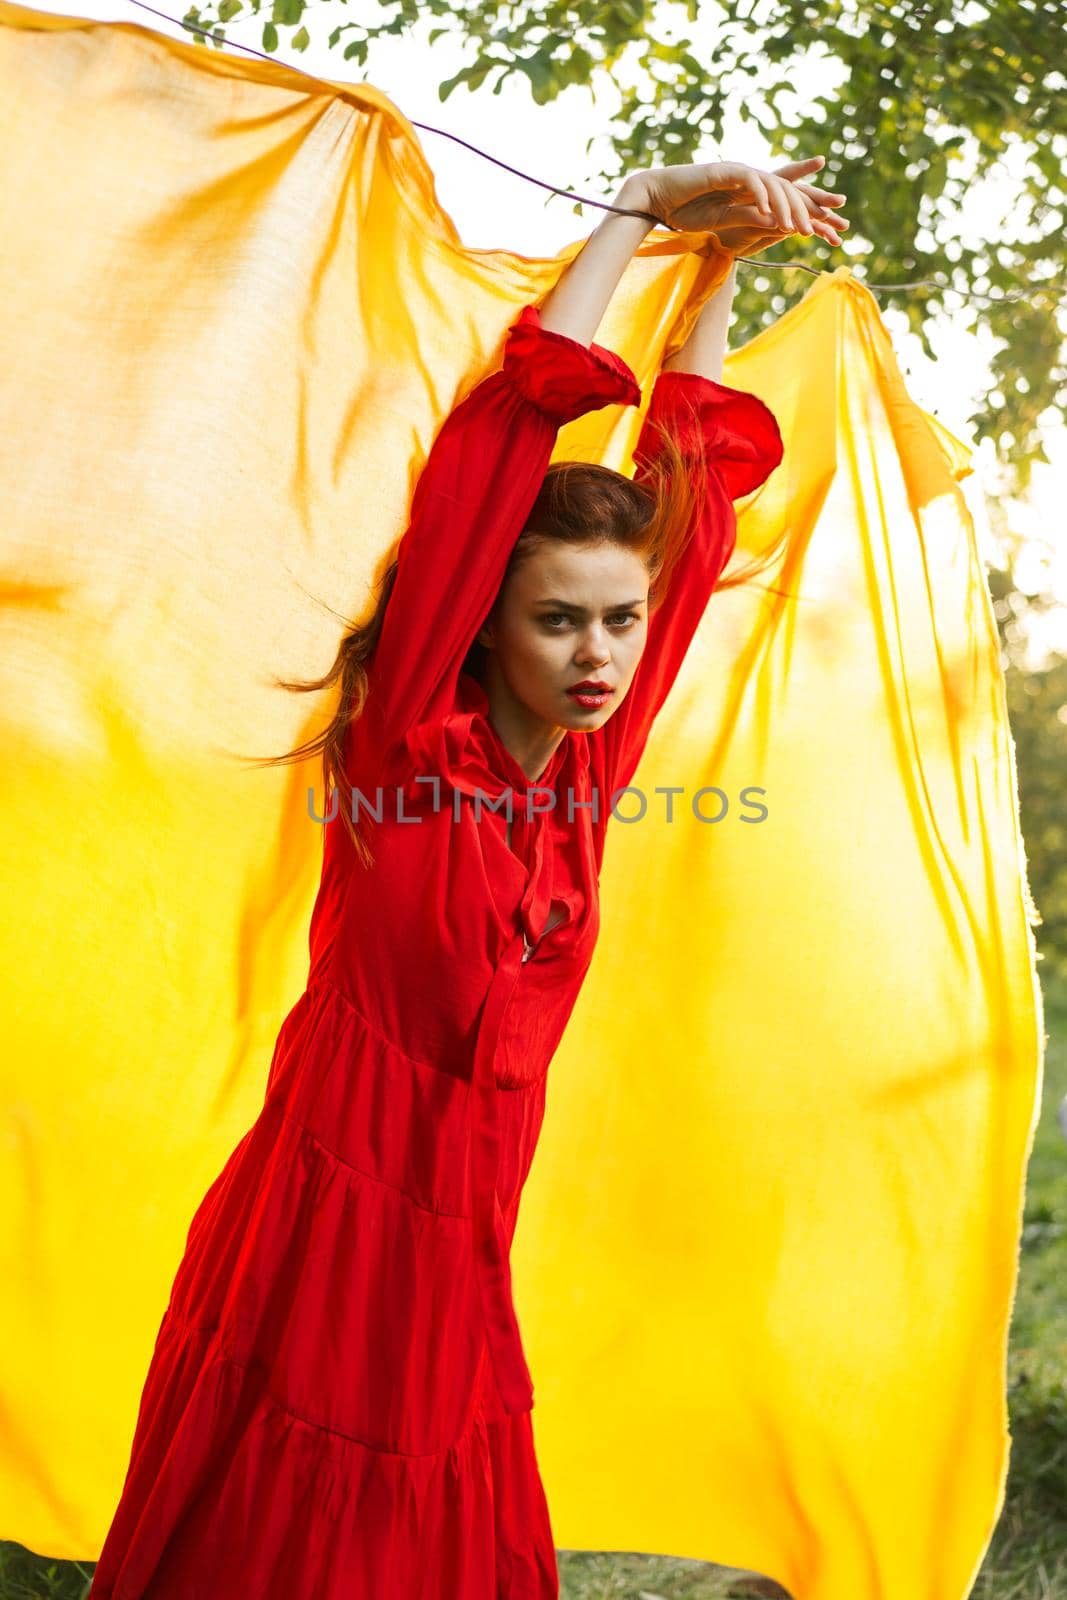 pretty woman nature yellow cloth fresh air glamor by Vichizh